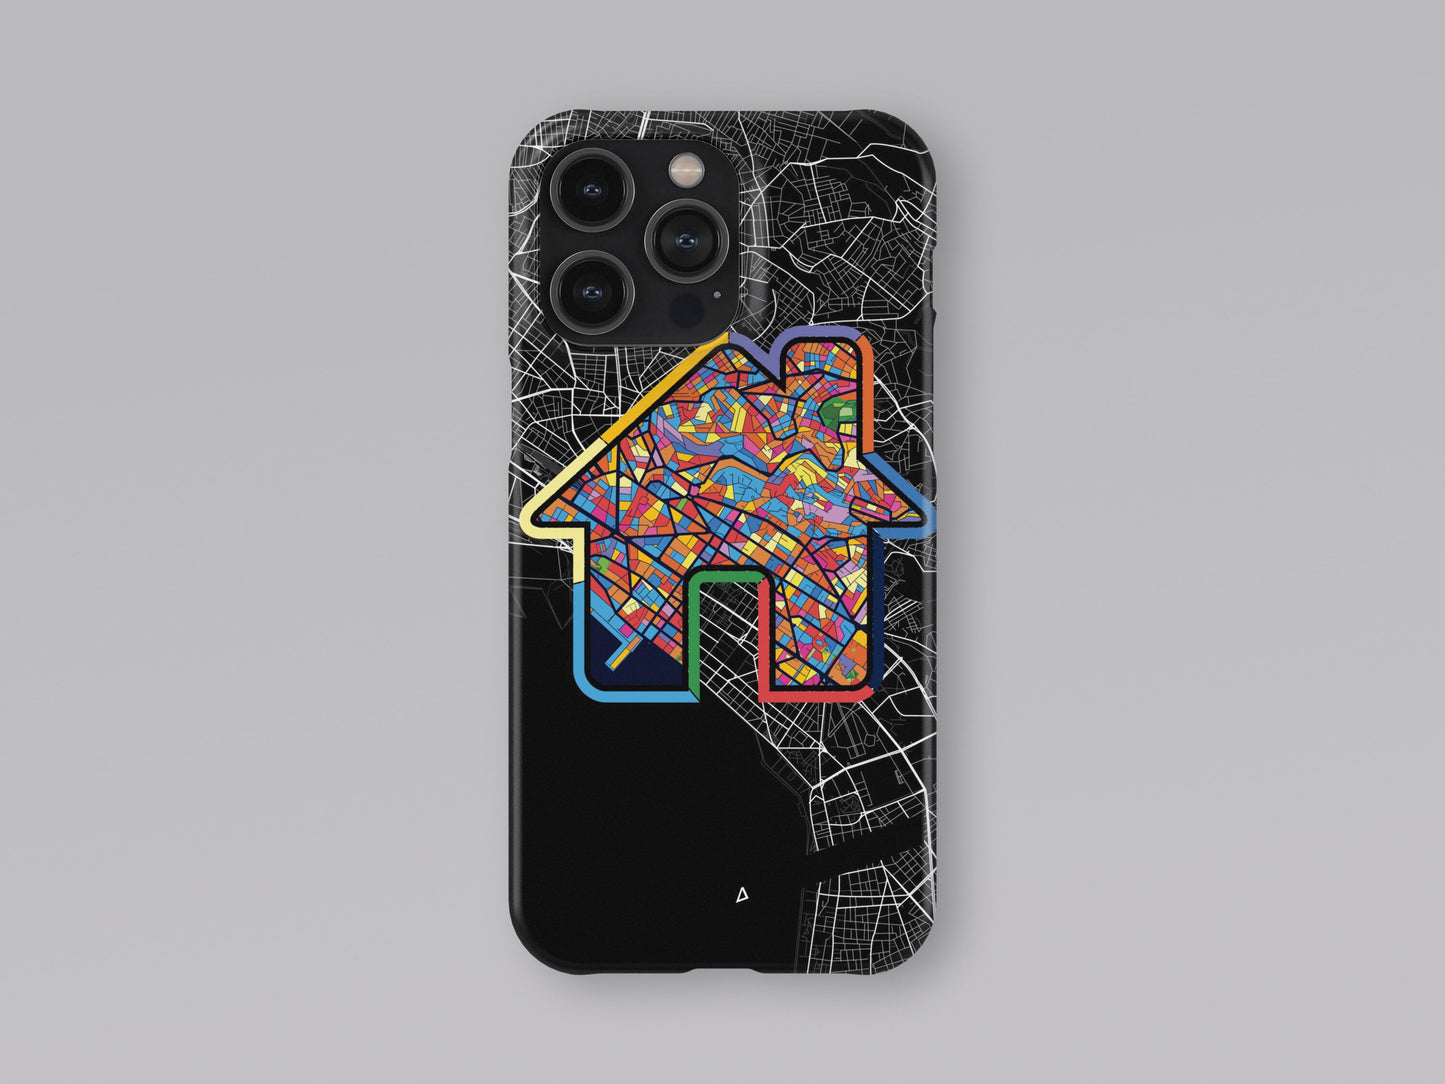 Θεσσαλονικη Ελλαδα slim phone case with colorful icon. Birthday, wedding or housewarming gift. Couple match cases. 3